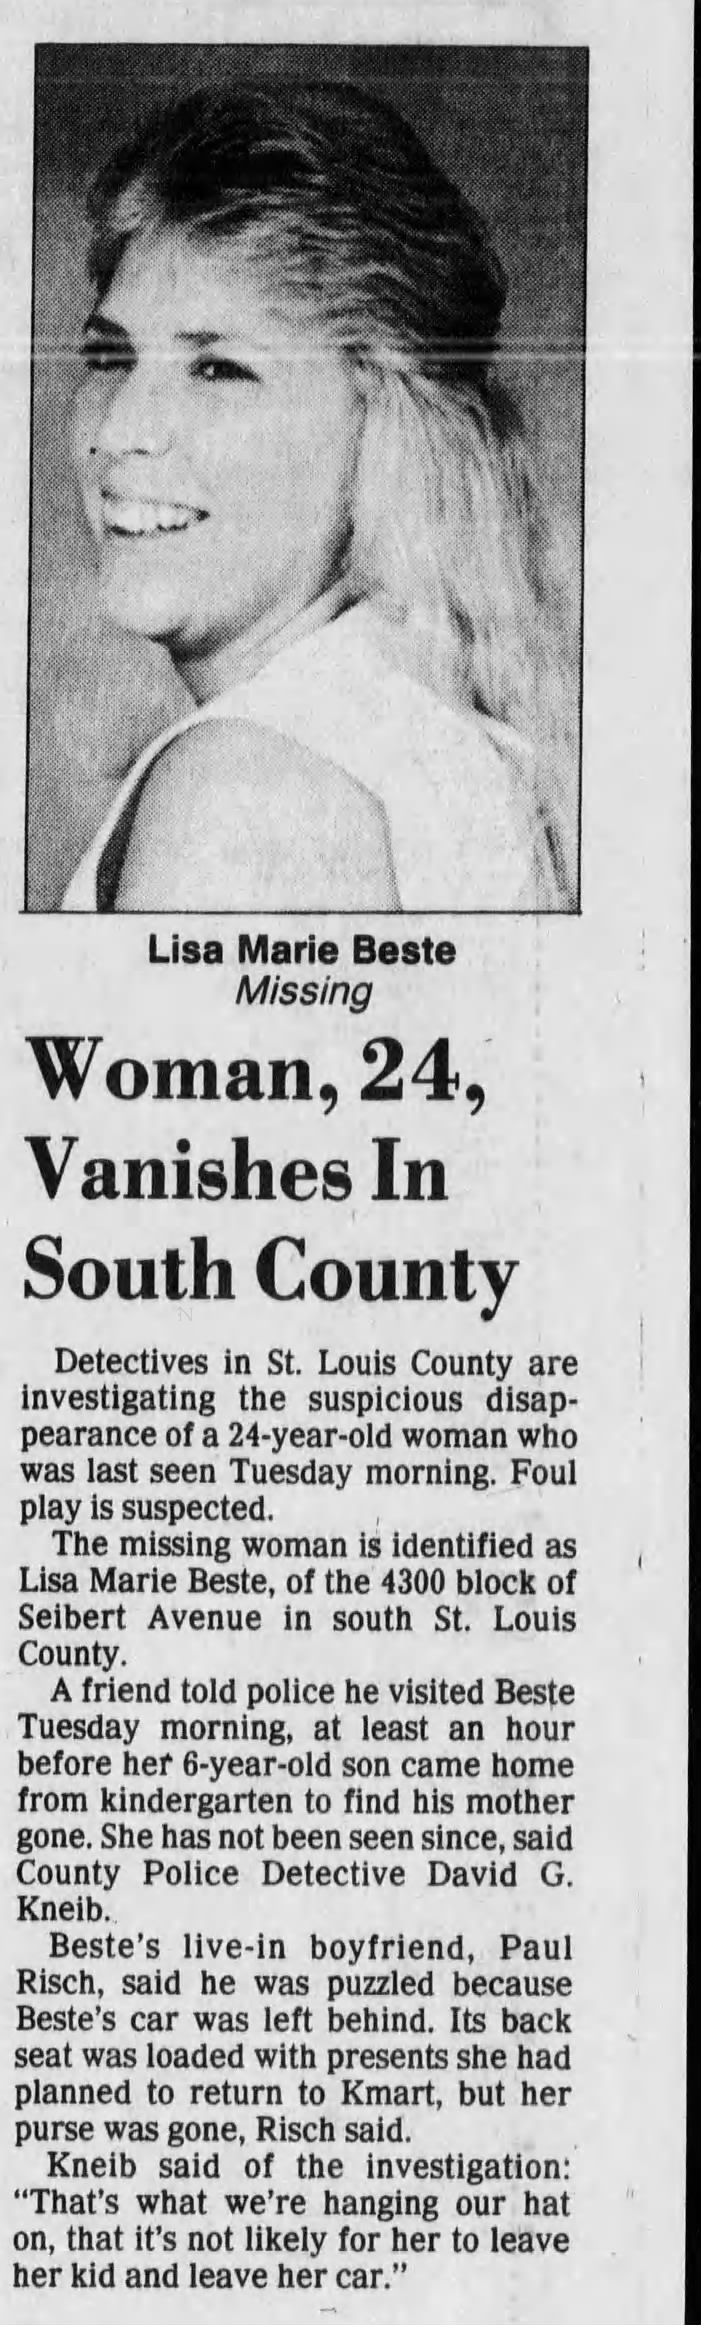 Lisa Marie Beste missing person